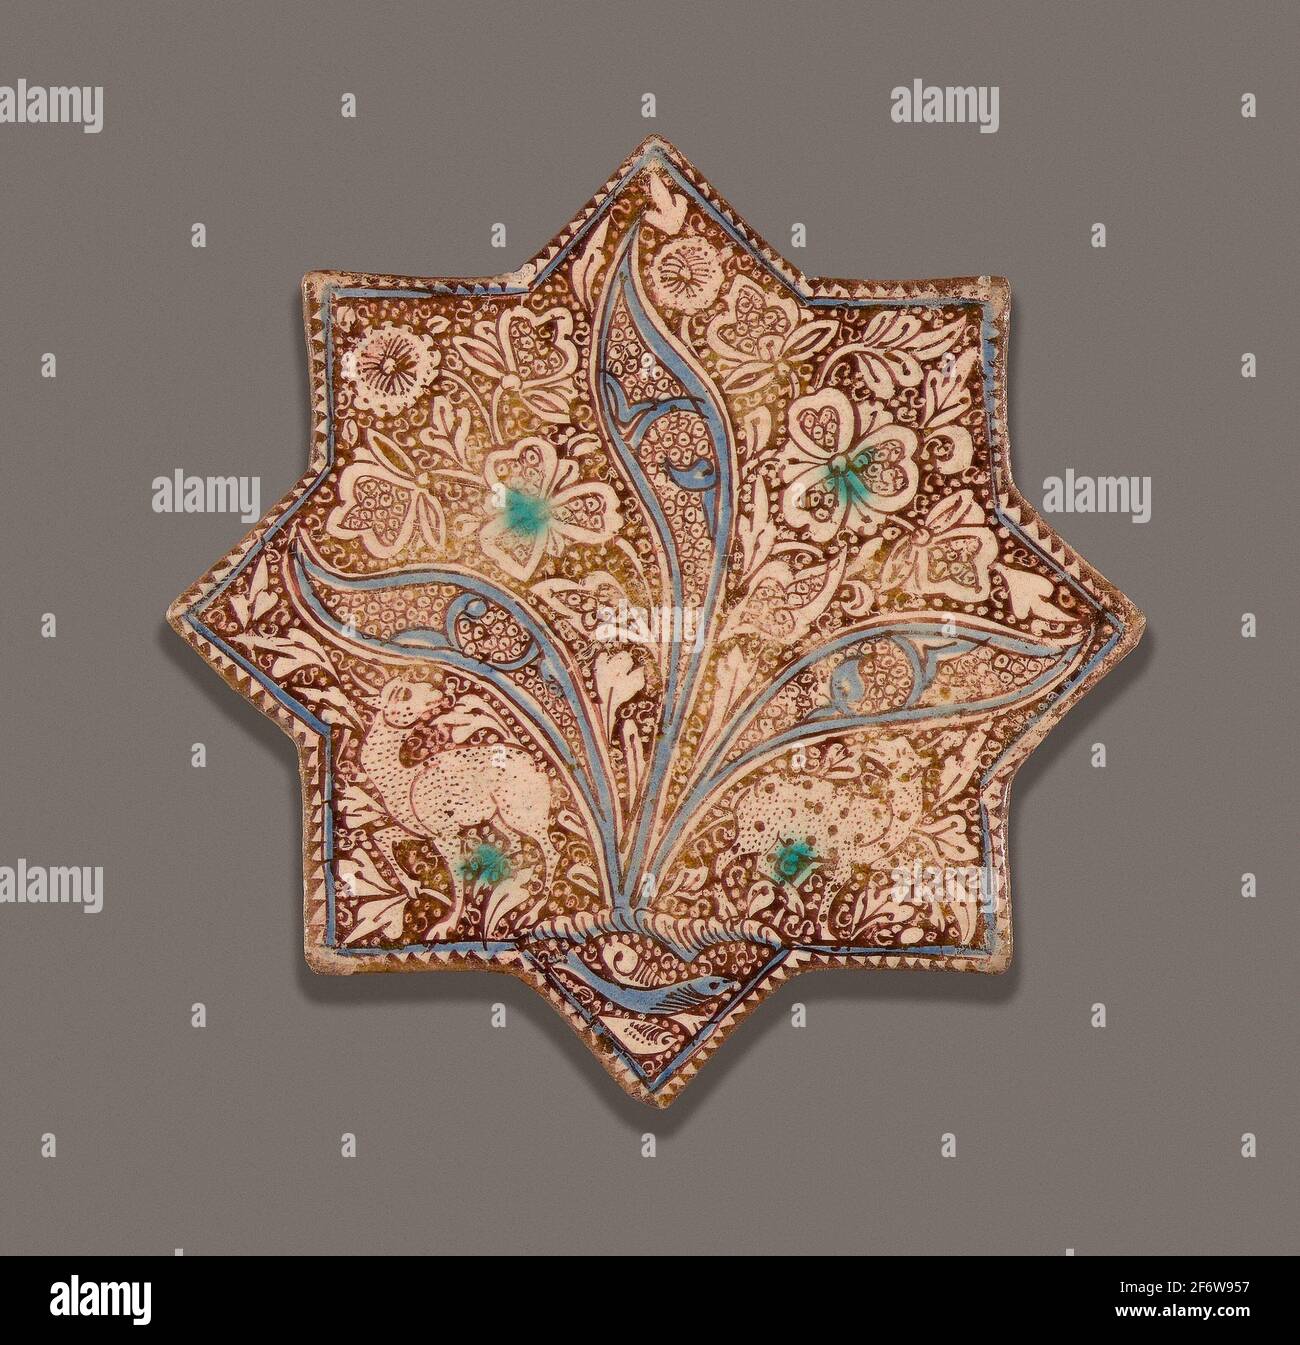 islamique. Carreaux en forme d'étoile - dynastie Ilkhanid (1256'1353), c.  1300 - Iran. Vaisselle peinte en bleu et turquoise dans un vernis blanc  opaque, avec Photo Stock - Alamy